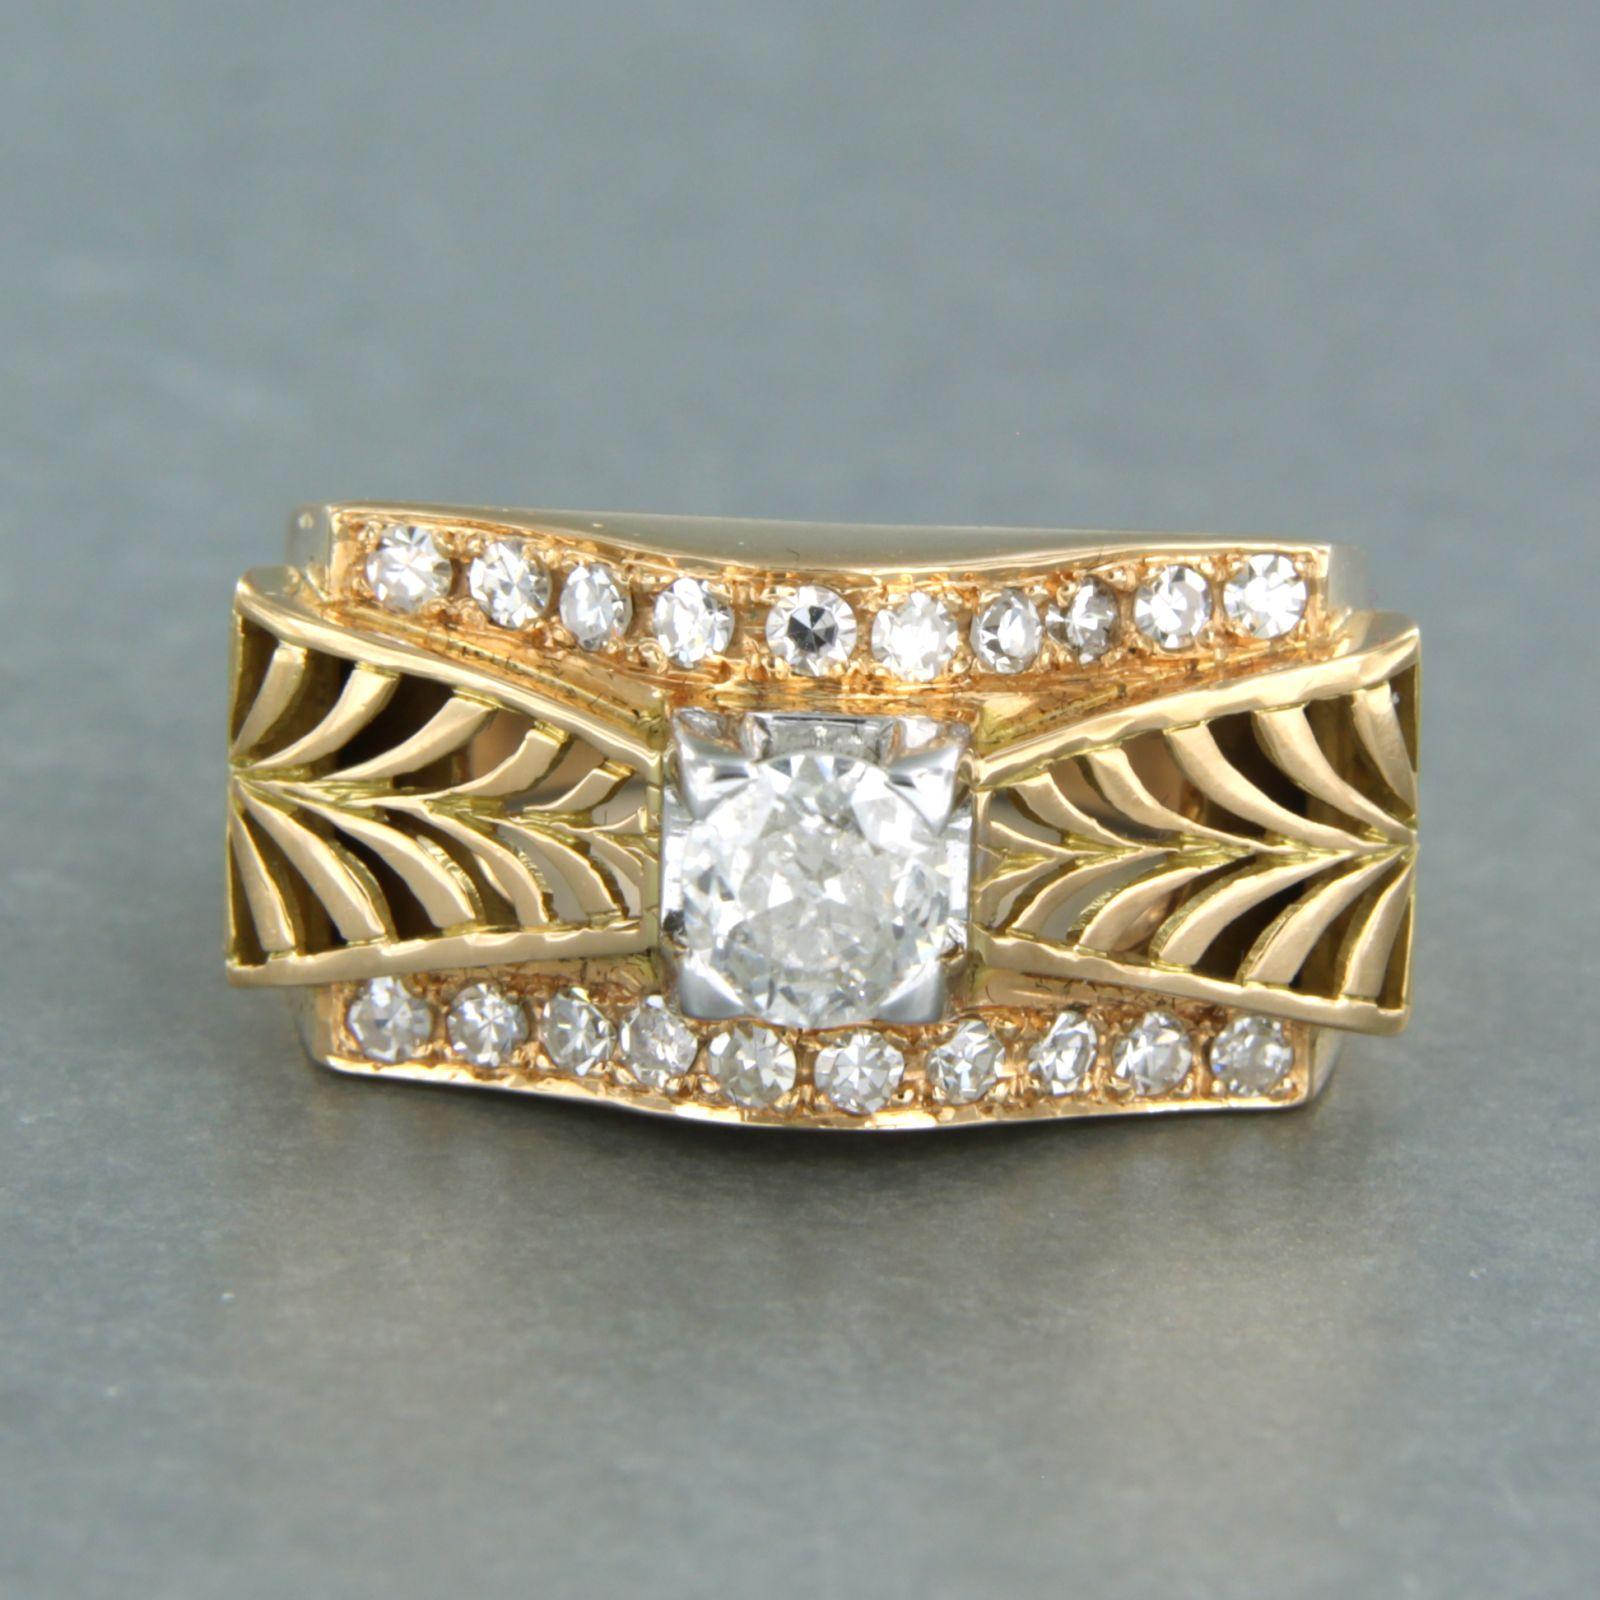 Ring aus 18 Karat Bicolor-Gold, besetzt mit Diamanten im alten Minenschliff und im Einzelschliff. 0.90ct - F/G - Pique2, VS/SI - Ringgröße U.S. 7.25 - EU. 17.5(55)

detaillierte Beschreibung:

die Oberseite des Rings ist 1,1 cm breit und 9,5 mm